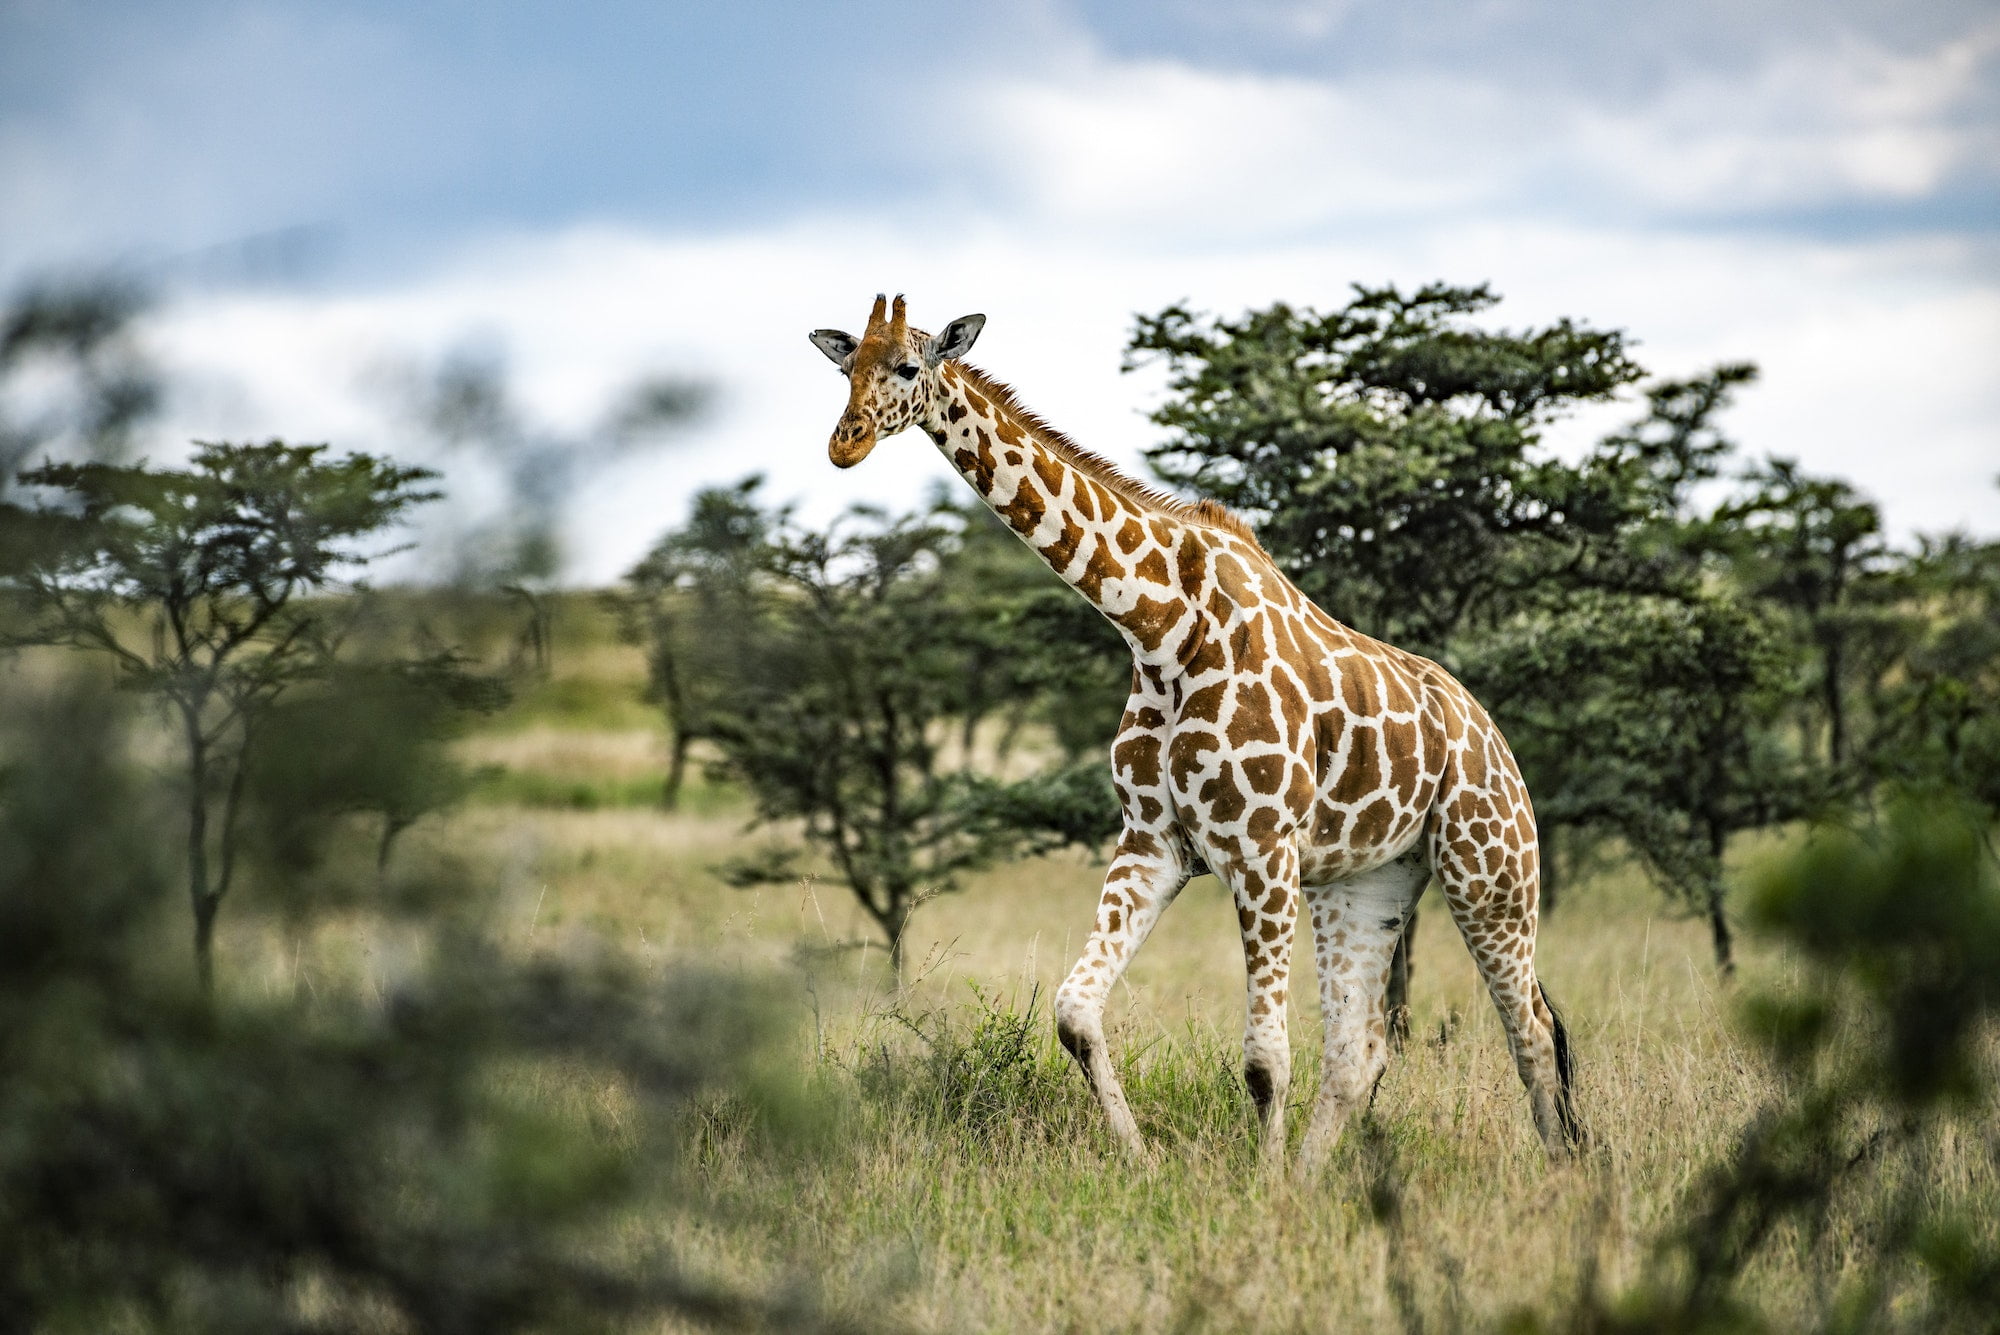 Reticulated Giraffe (Giraffa reticulata) at El Karama Ranch, Laikipia County, Kenya